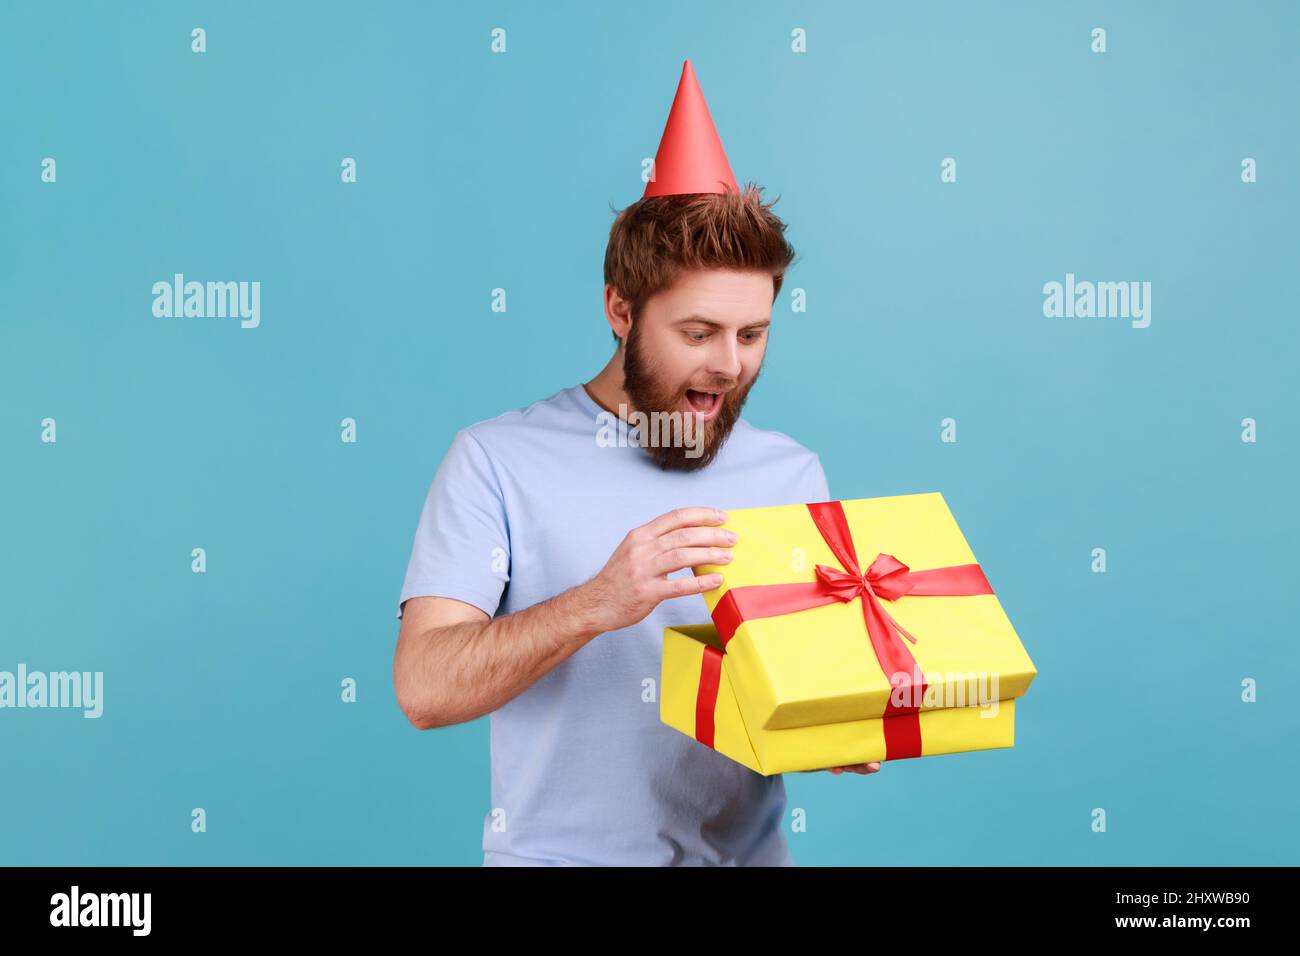 Mann mit Party-Kegel Hut hält geöffnet Geschenkbox und Blick auf die Gegenwart mit aufgeregt aussehen, Auspacken Geschenk, genießen genial Geburtstagsüberraschung. Innenaufnahme des Studios isoliert auf blauem Hintergrund. Stockfoto